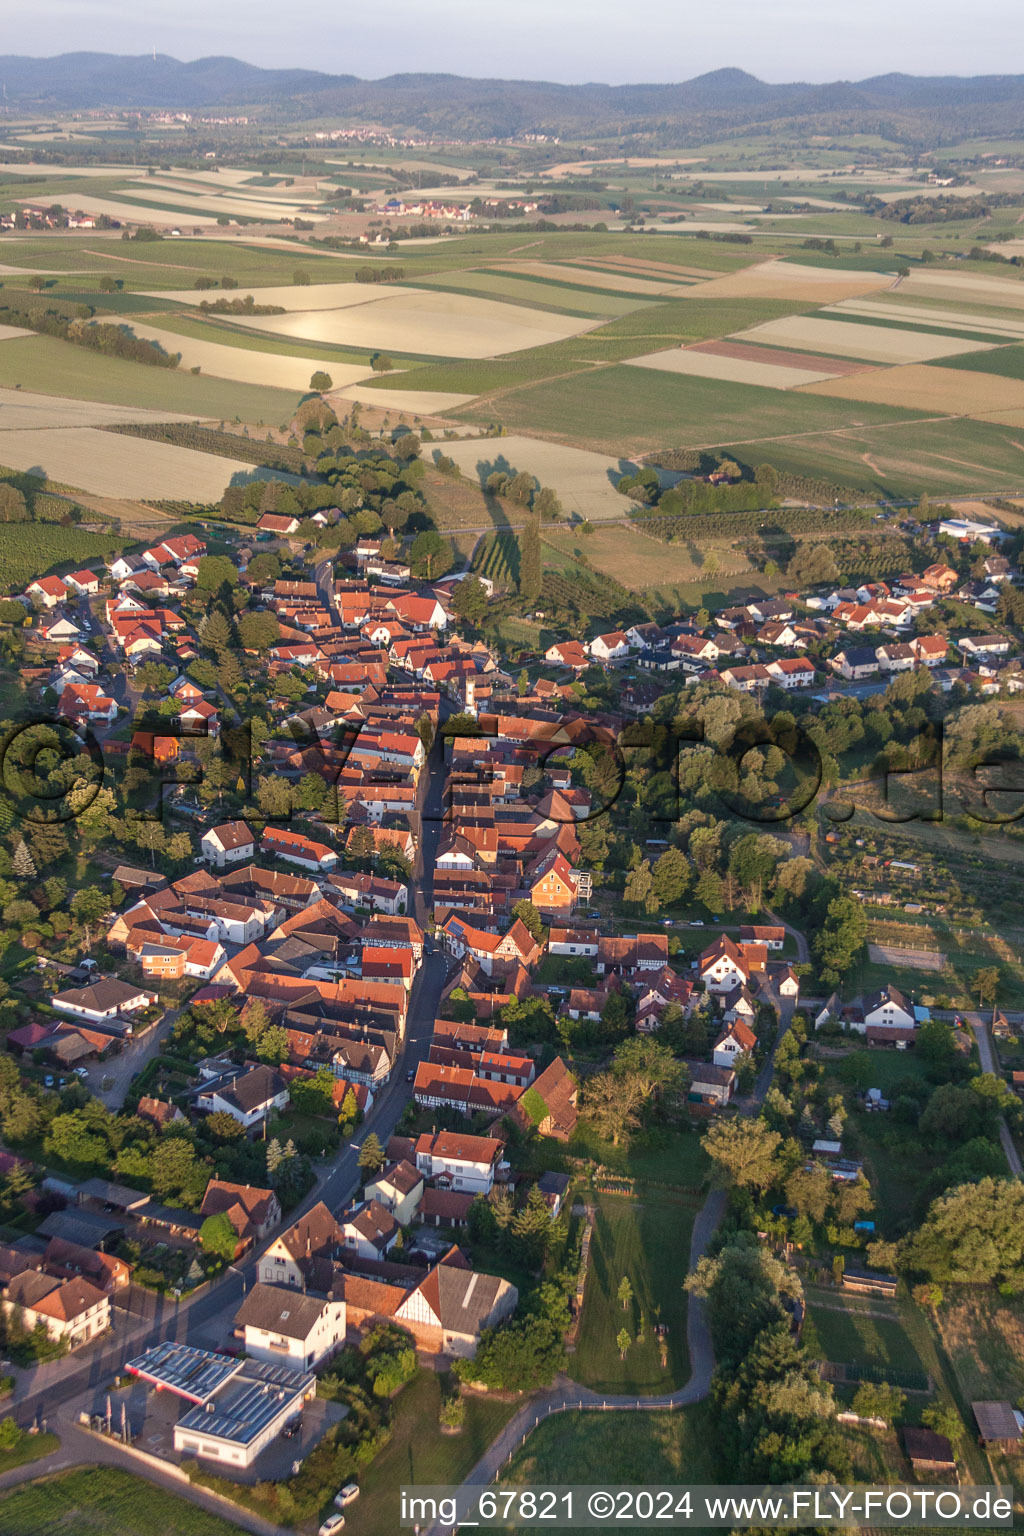 Vue oblique de Champs agricoles et surfaces utilisables à Oberhausen dans le département Rhénanie-Palatinat, Allemagne